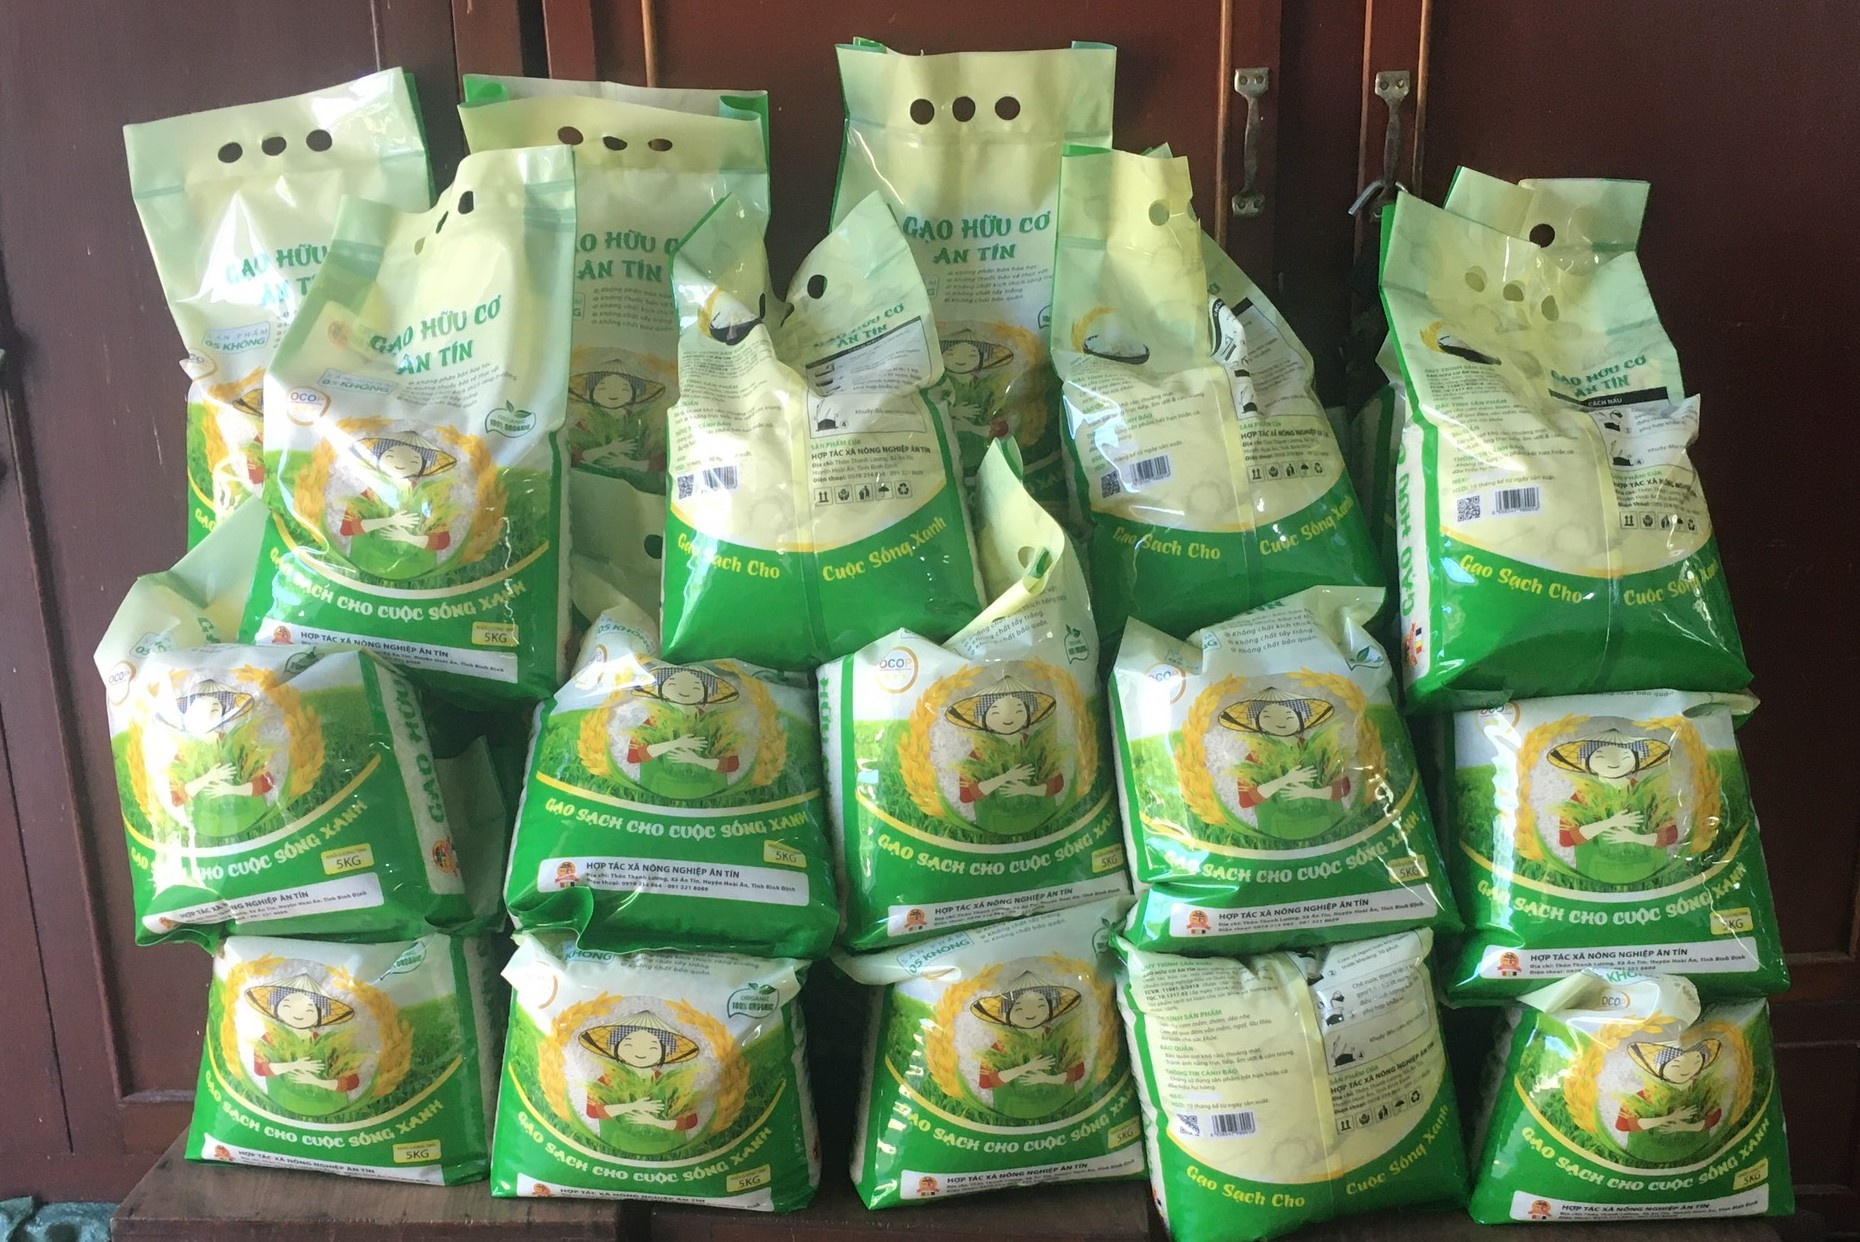 Gạo hữu cơ của HTX Nông nghiệp Ân Tín được bán với giá cao, tiêu thụ mạnh tại thị trường trong và ngoài tỉnh. Ảnh: V.Đ.T.